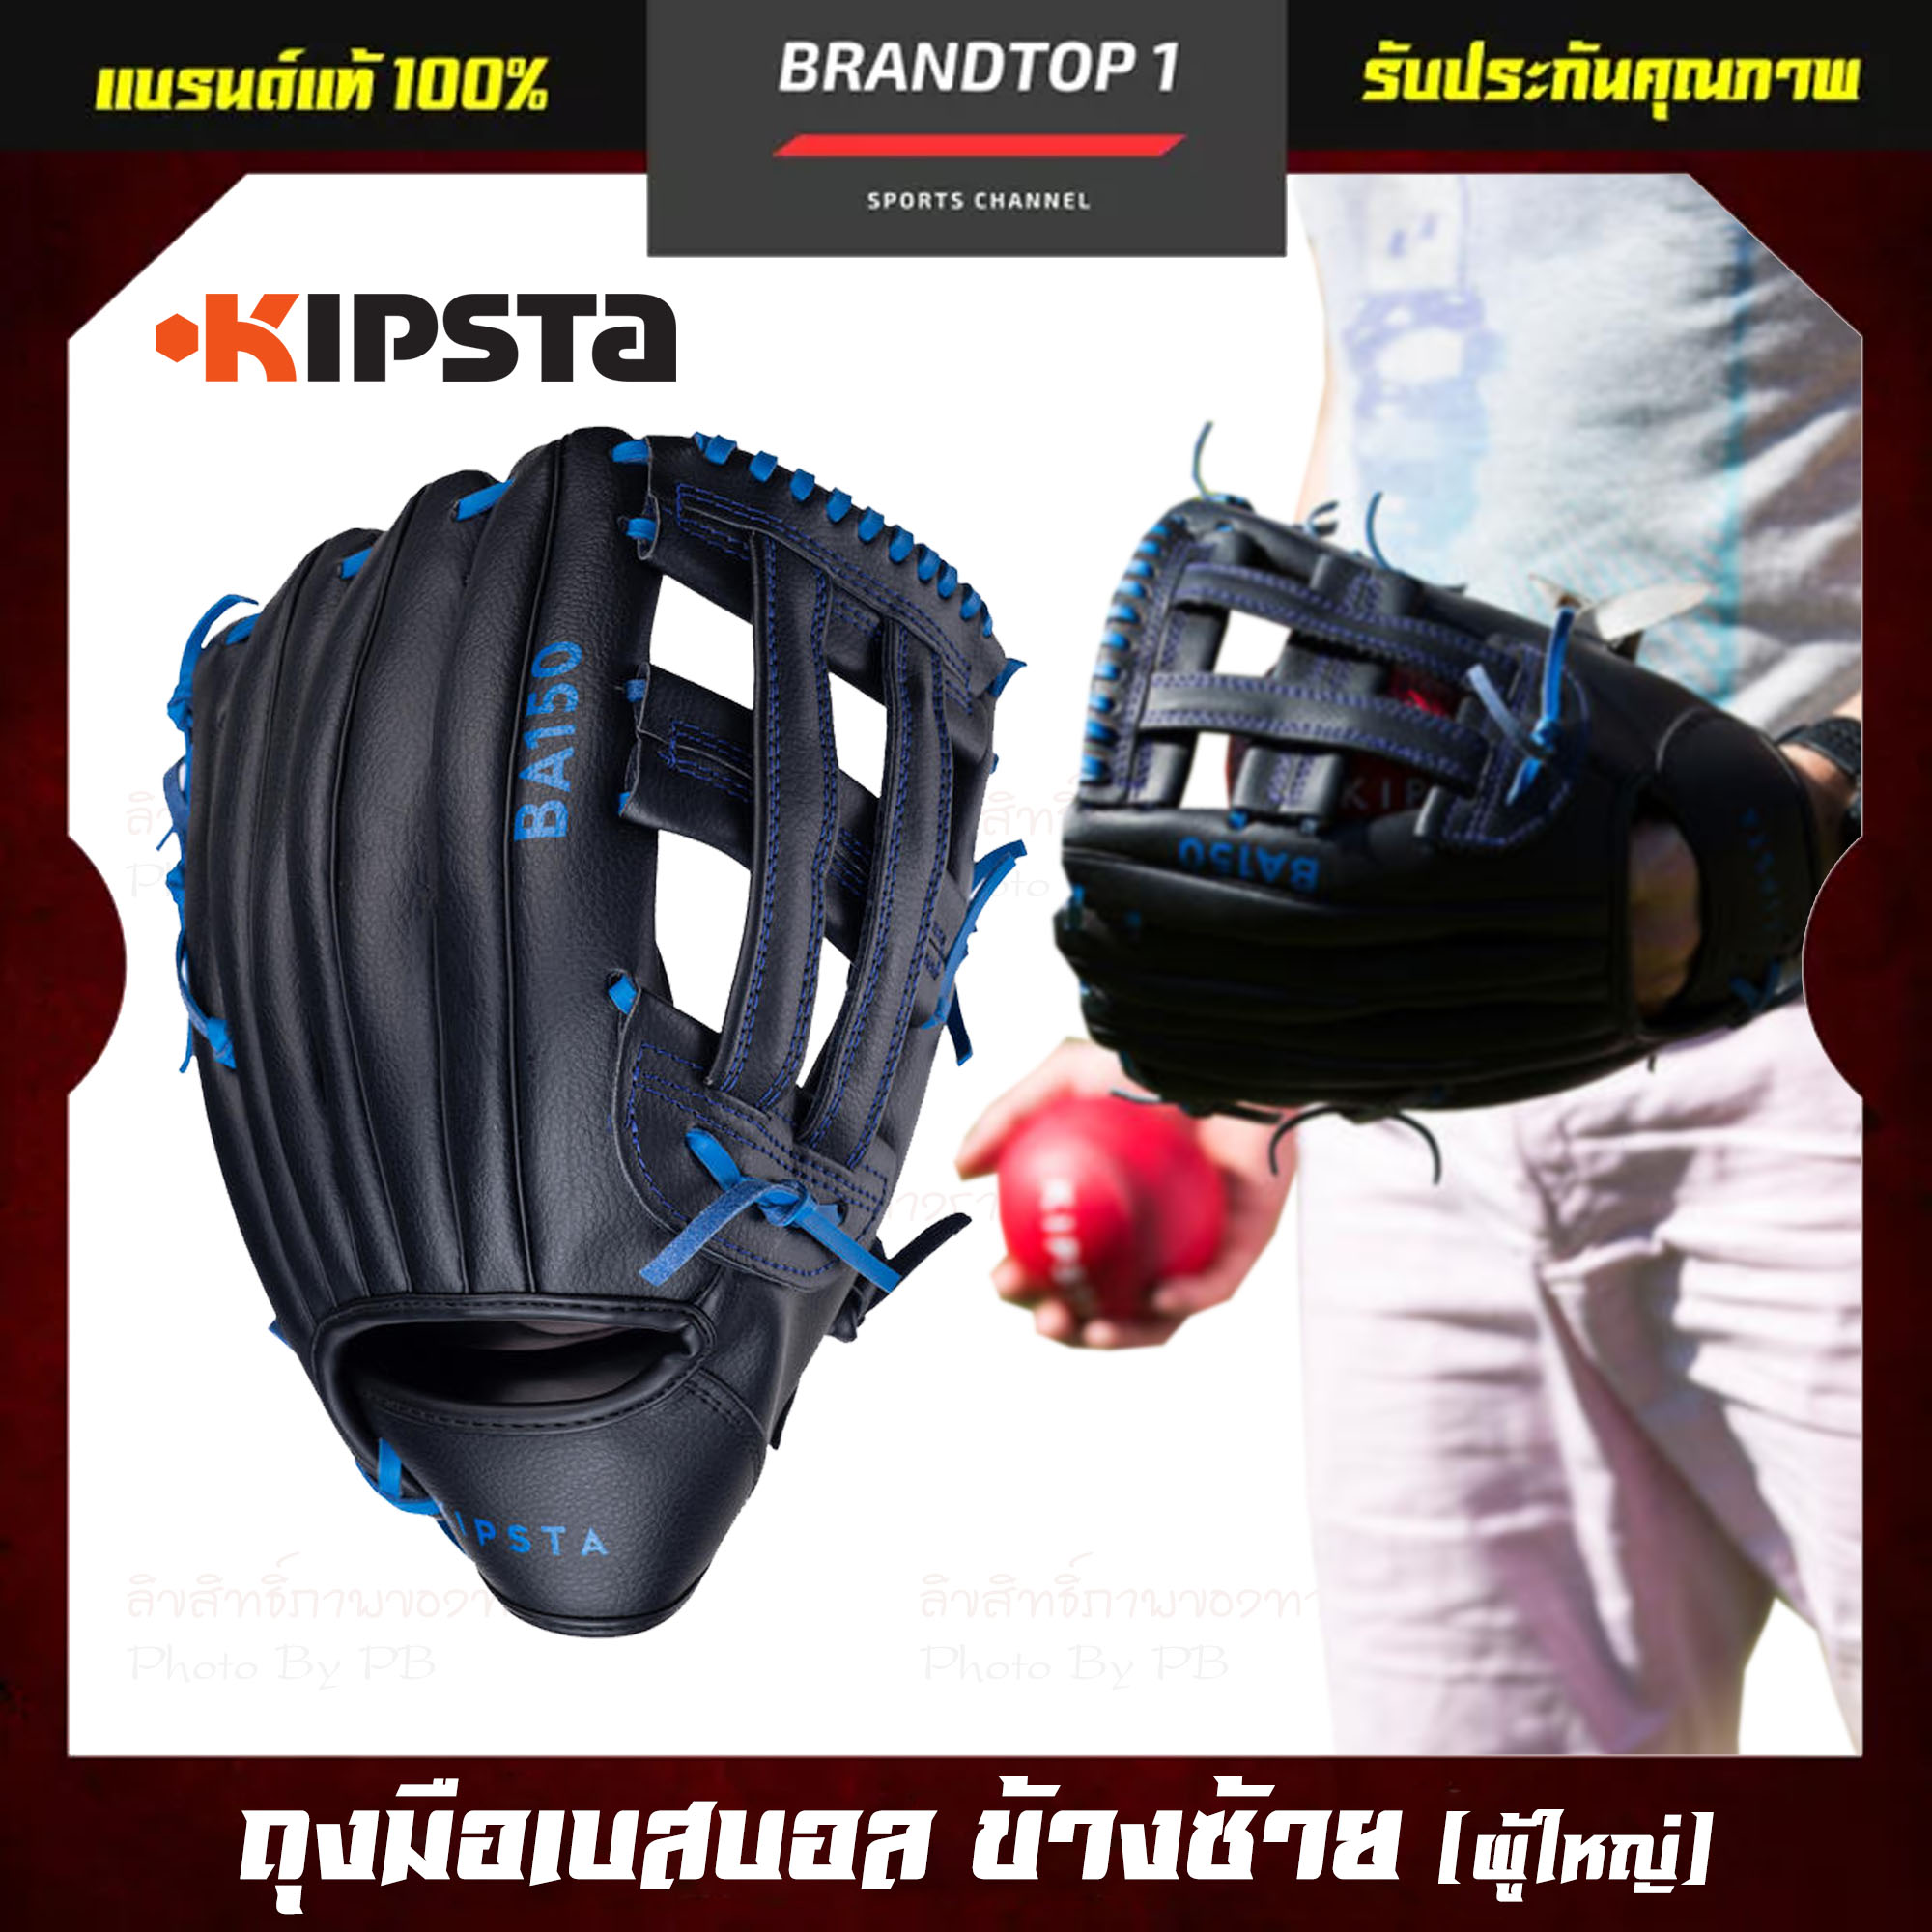 ถุงมือเบสบอล ข้างซ้าย KIPSTA รุ่น BA150 สำหรับผู้ใหญ่ แบรนด์แท้ ประกัน 2 ปี Glove, Right Hand Throw